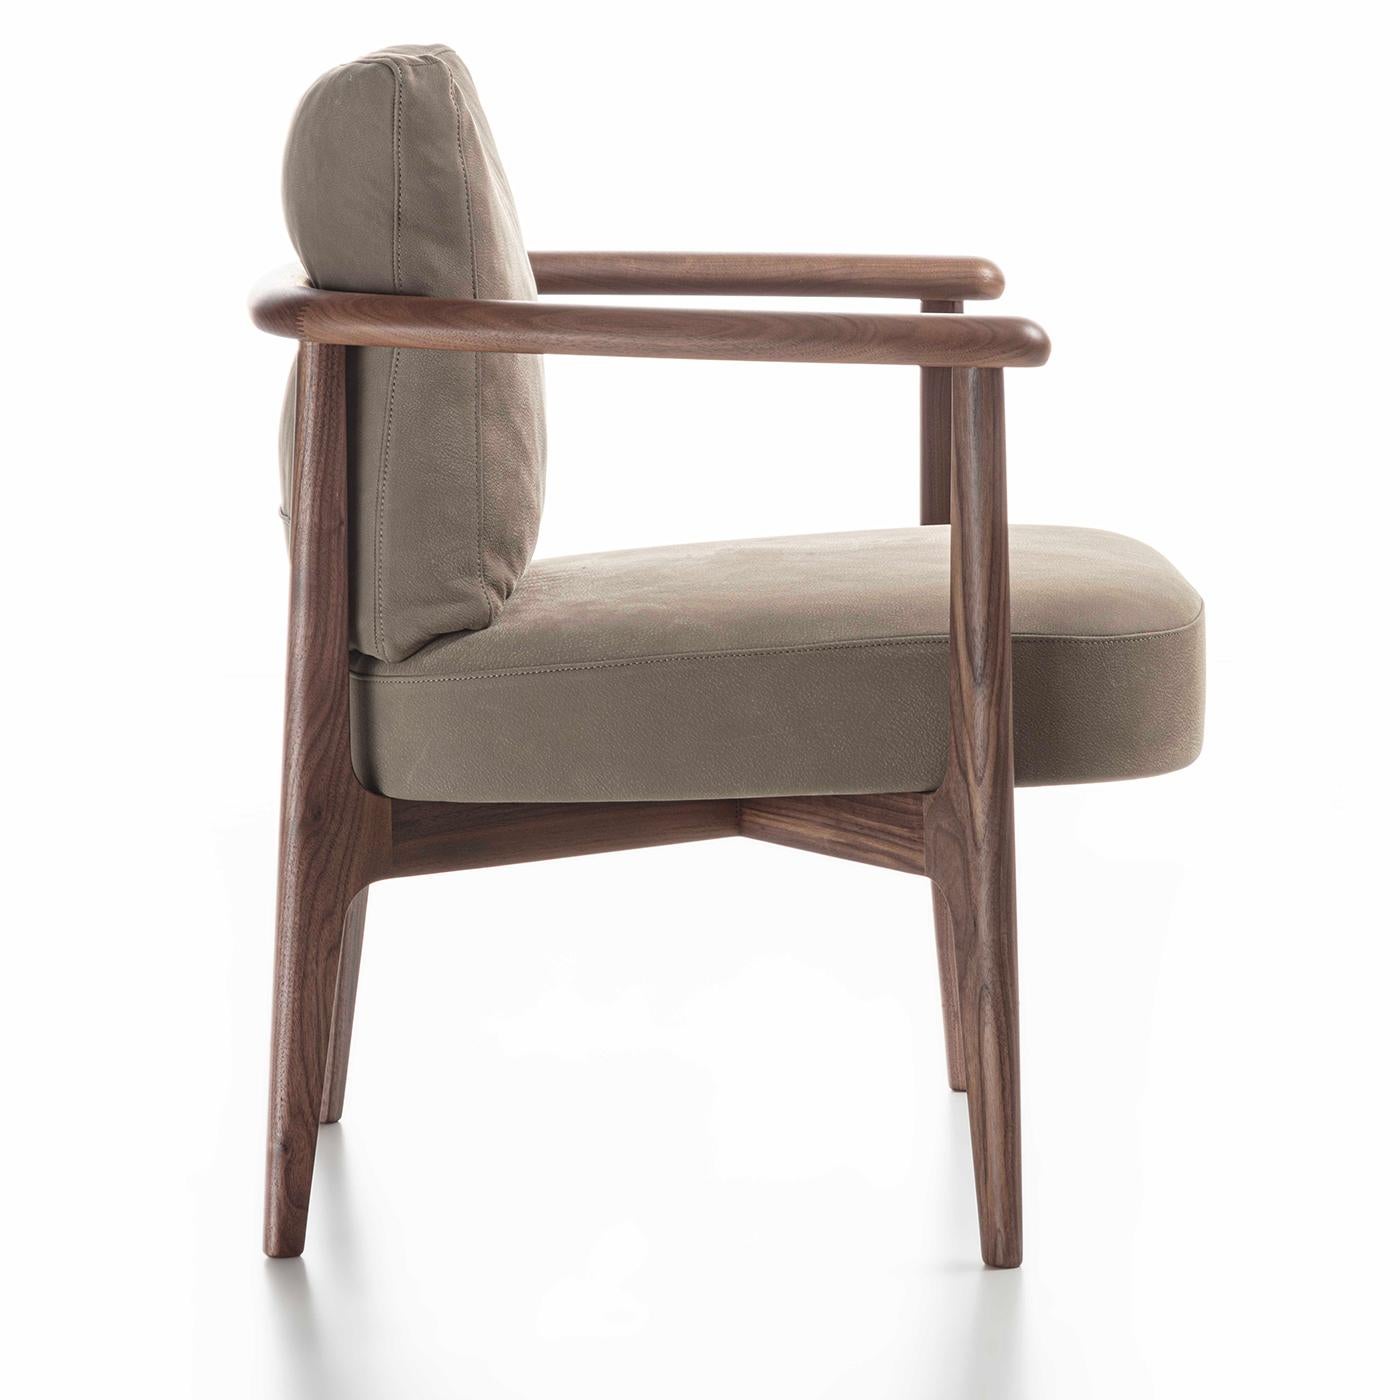 Dieser atemberaubende Sessel aus massivem Canaletto-Nussbaum verkörpert mit seinen harmonischen Kurven und zeitlosen neutralen Tönen moderne Raffinesse. Die 45 cm hohe Sitzfläche und die Rückenlehne - umschlossen von einer vollständig umhüllenden